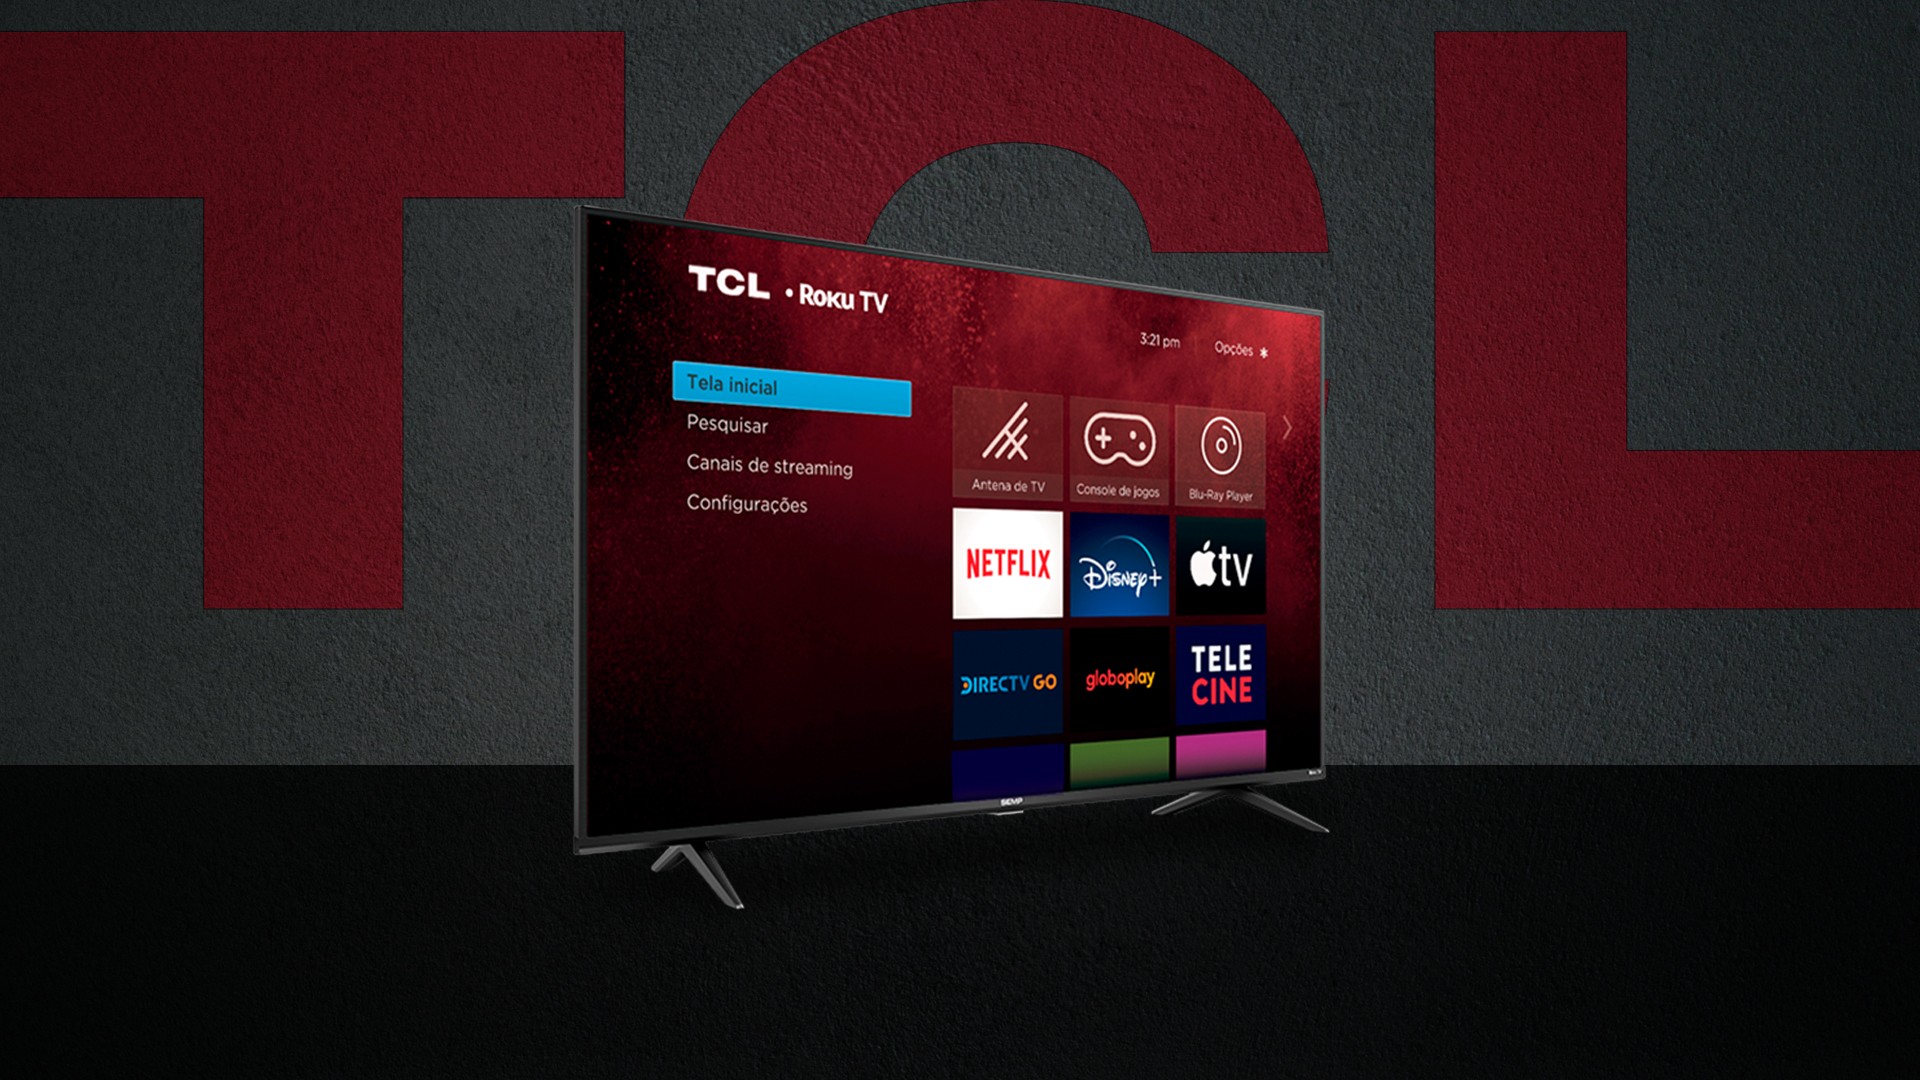 TCL anuncia novas Smart TVs com Roku TV a partir de R$ 1.939 1